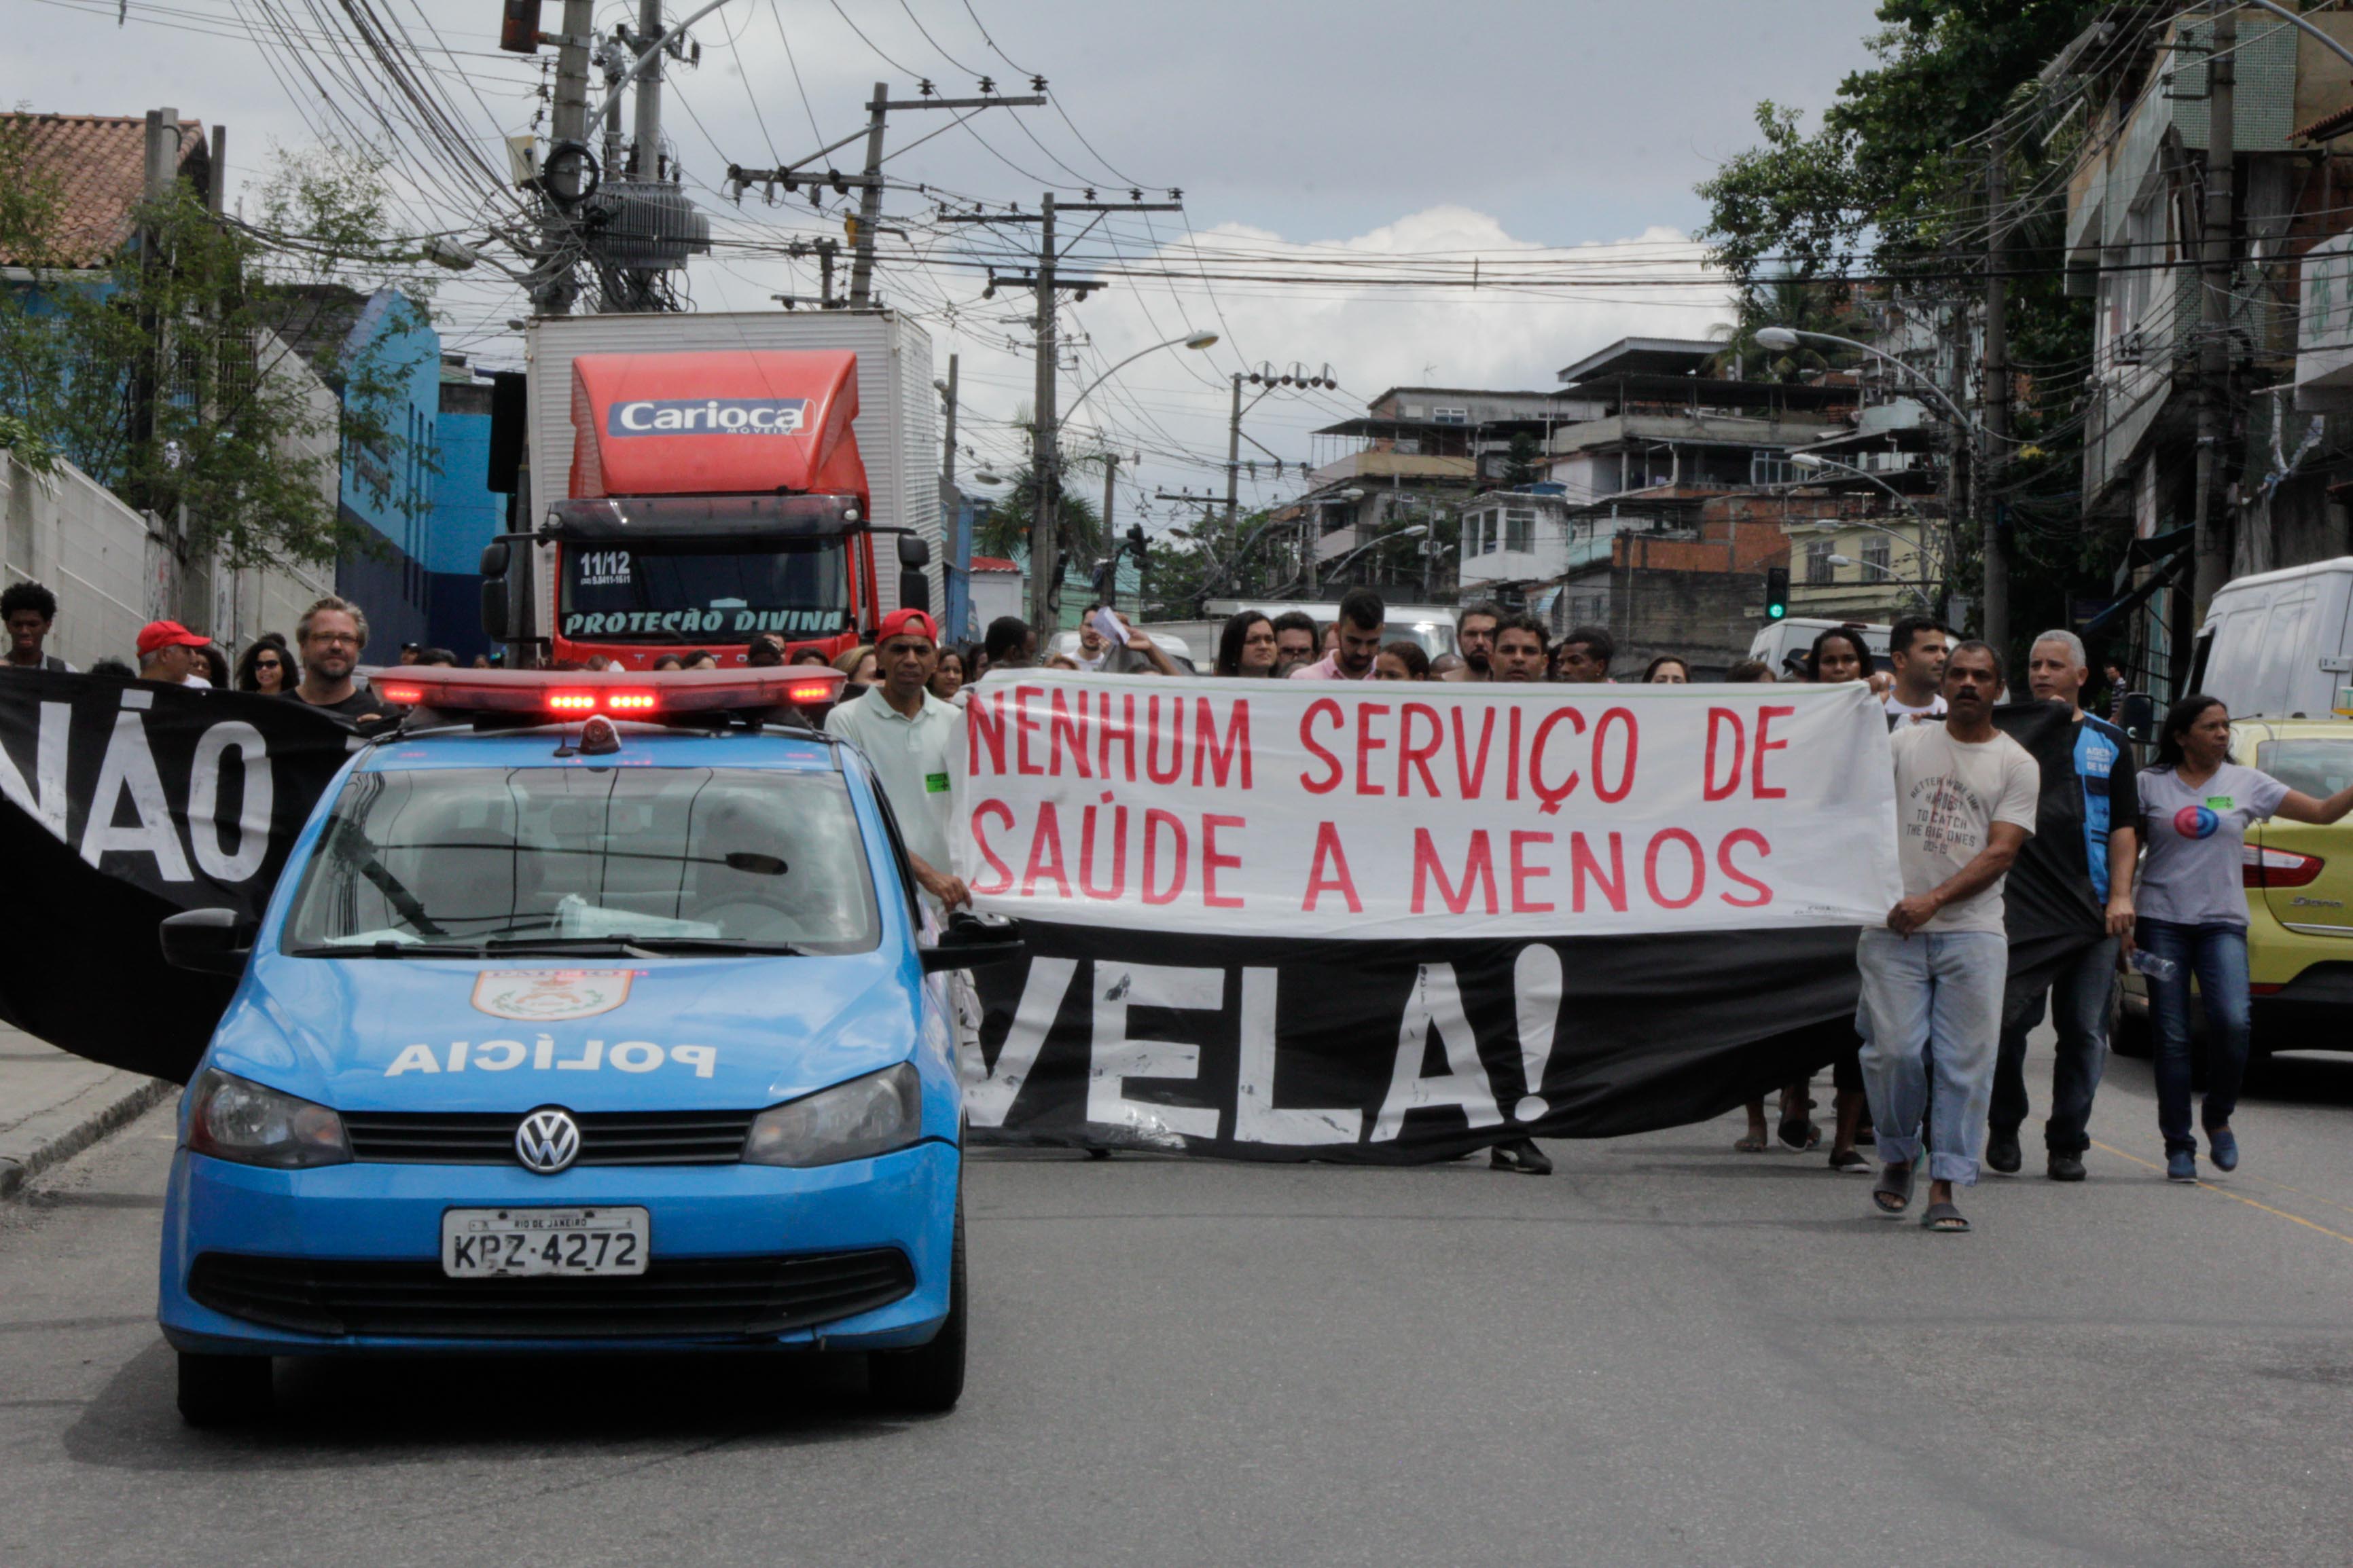 O protesto chegou a fechar por completa a Estrada do Itararé | Foto: Betinho Casas Novas / Jornal Voz das Comunidades